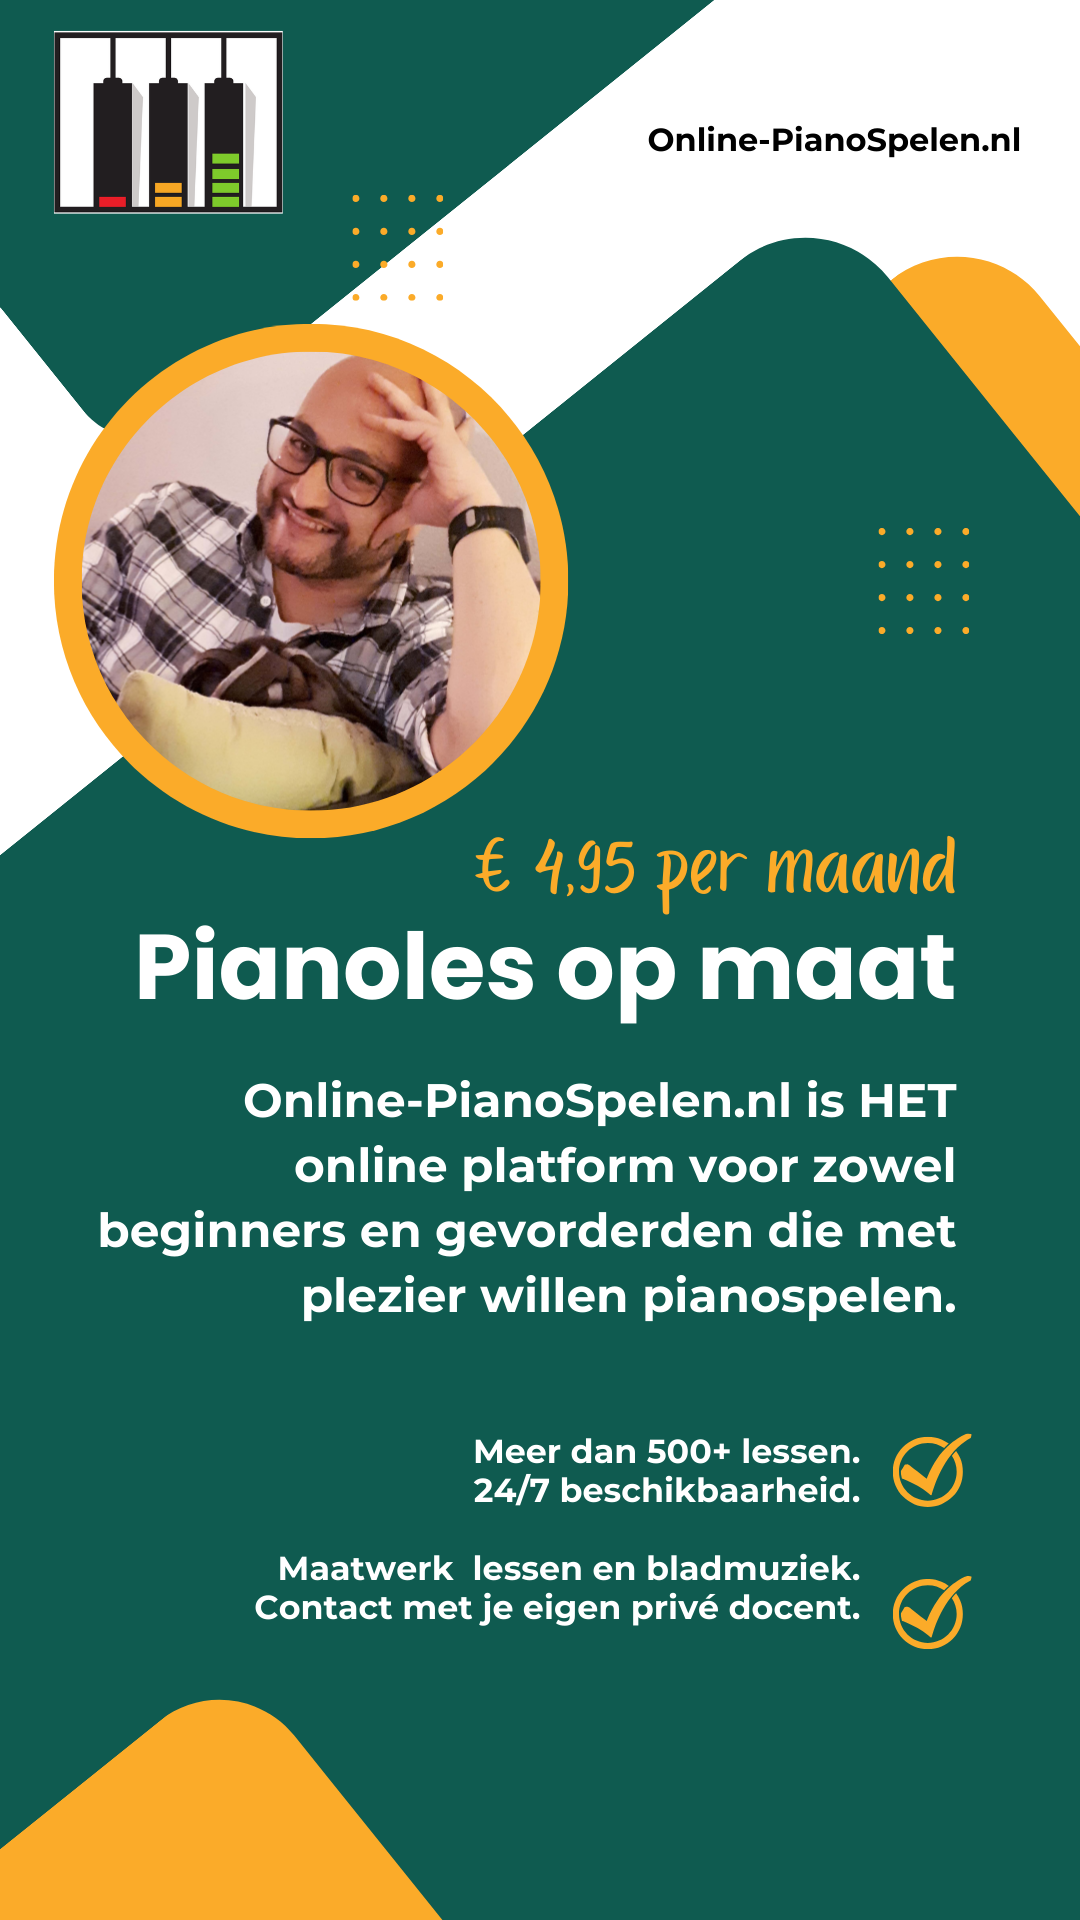 Flyer Online-PianoSpelen.nl